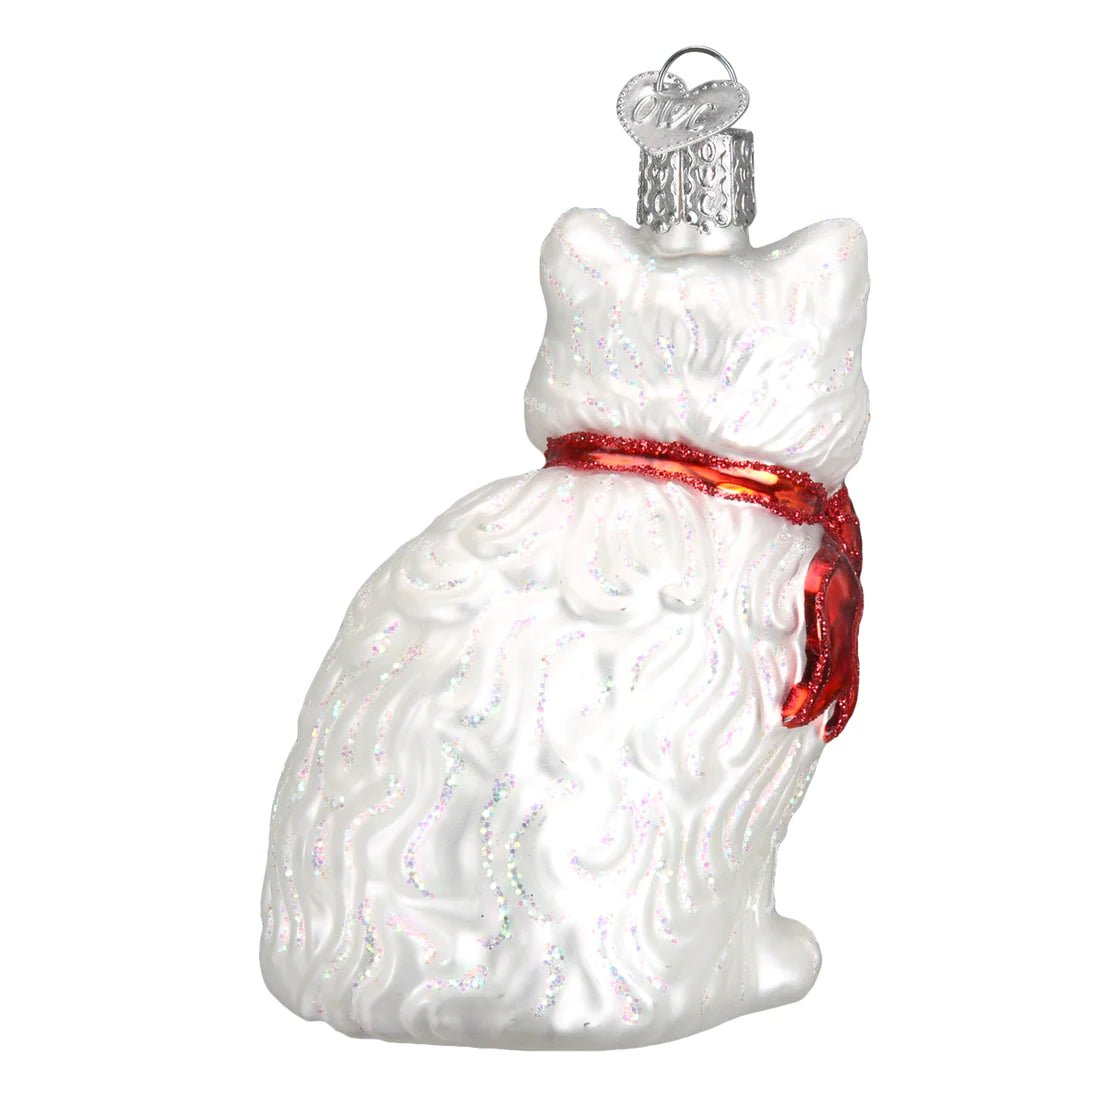 Princess Kitty Old World Christmas Glass Ornament